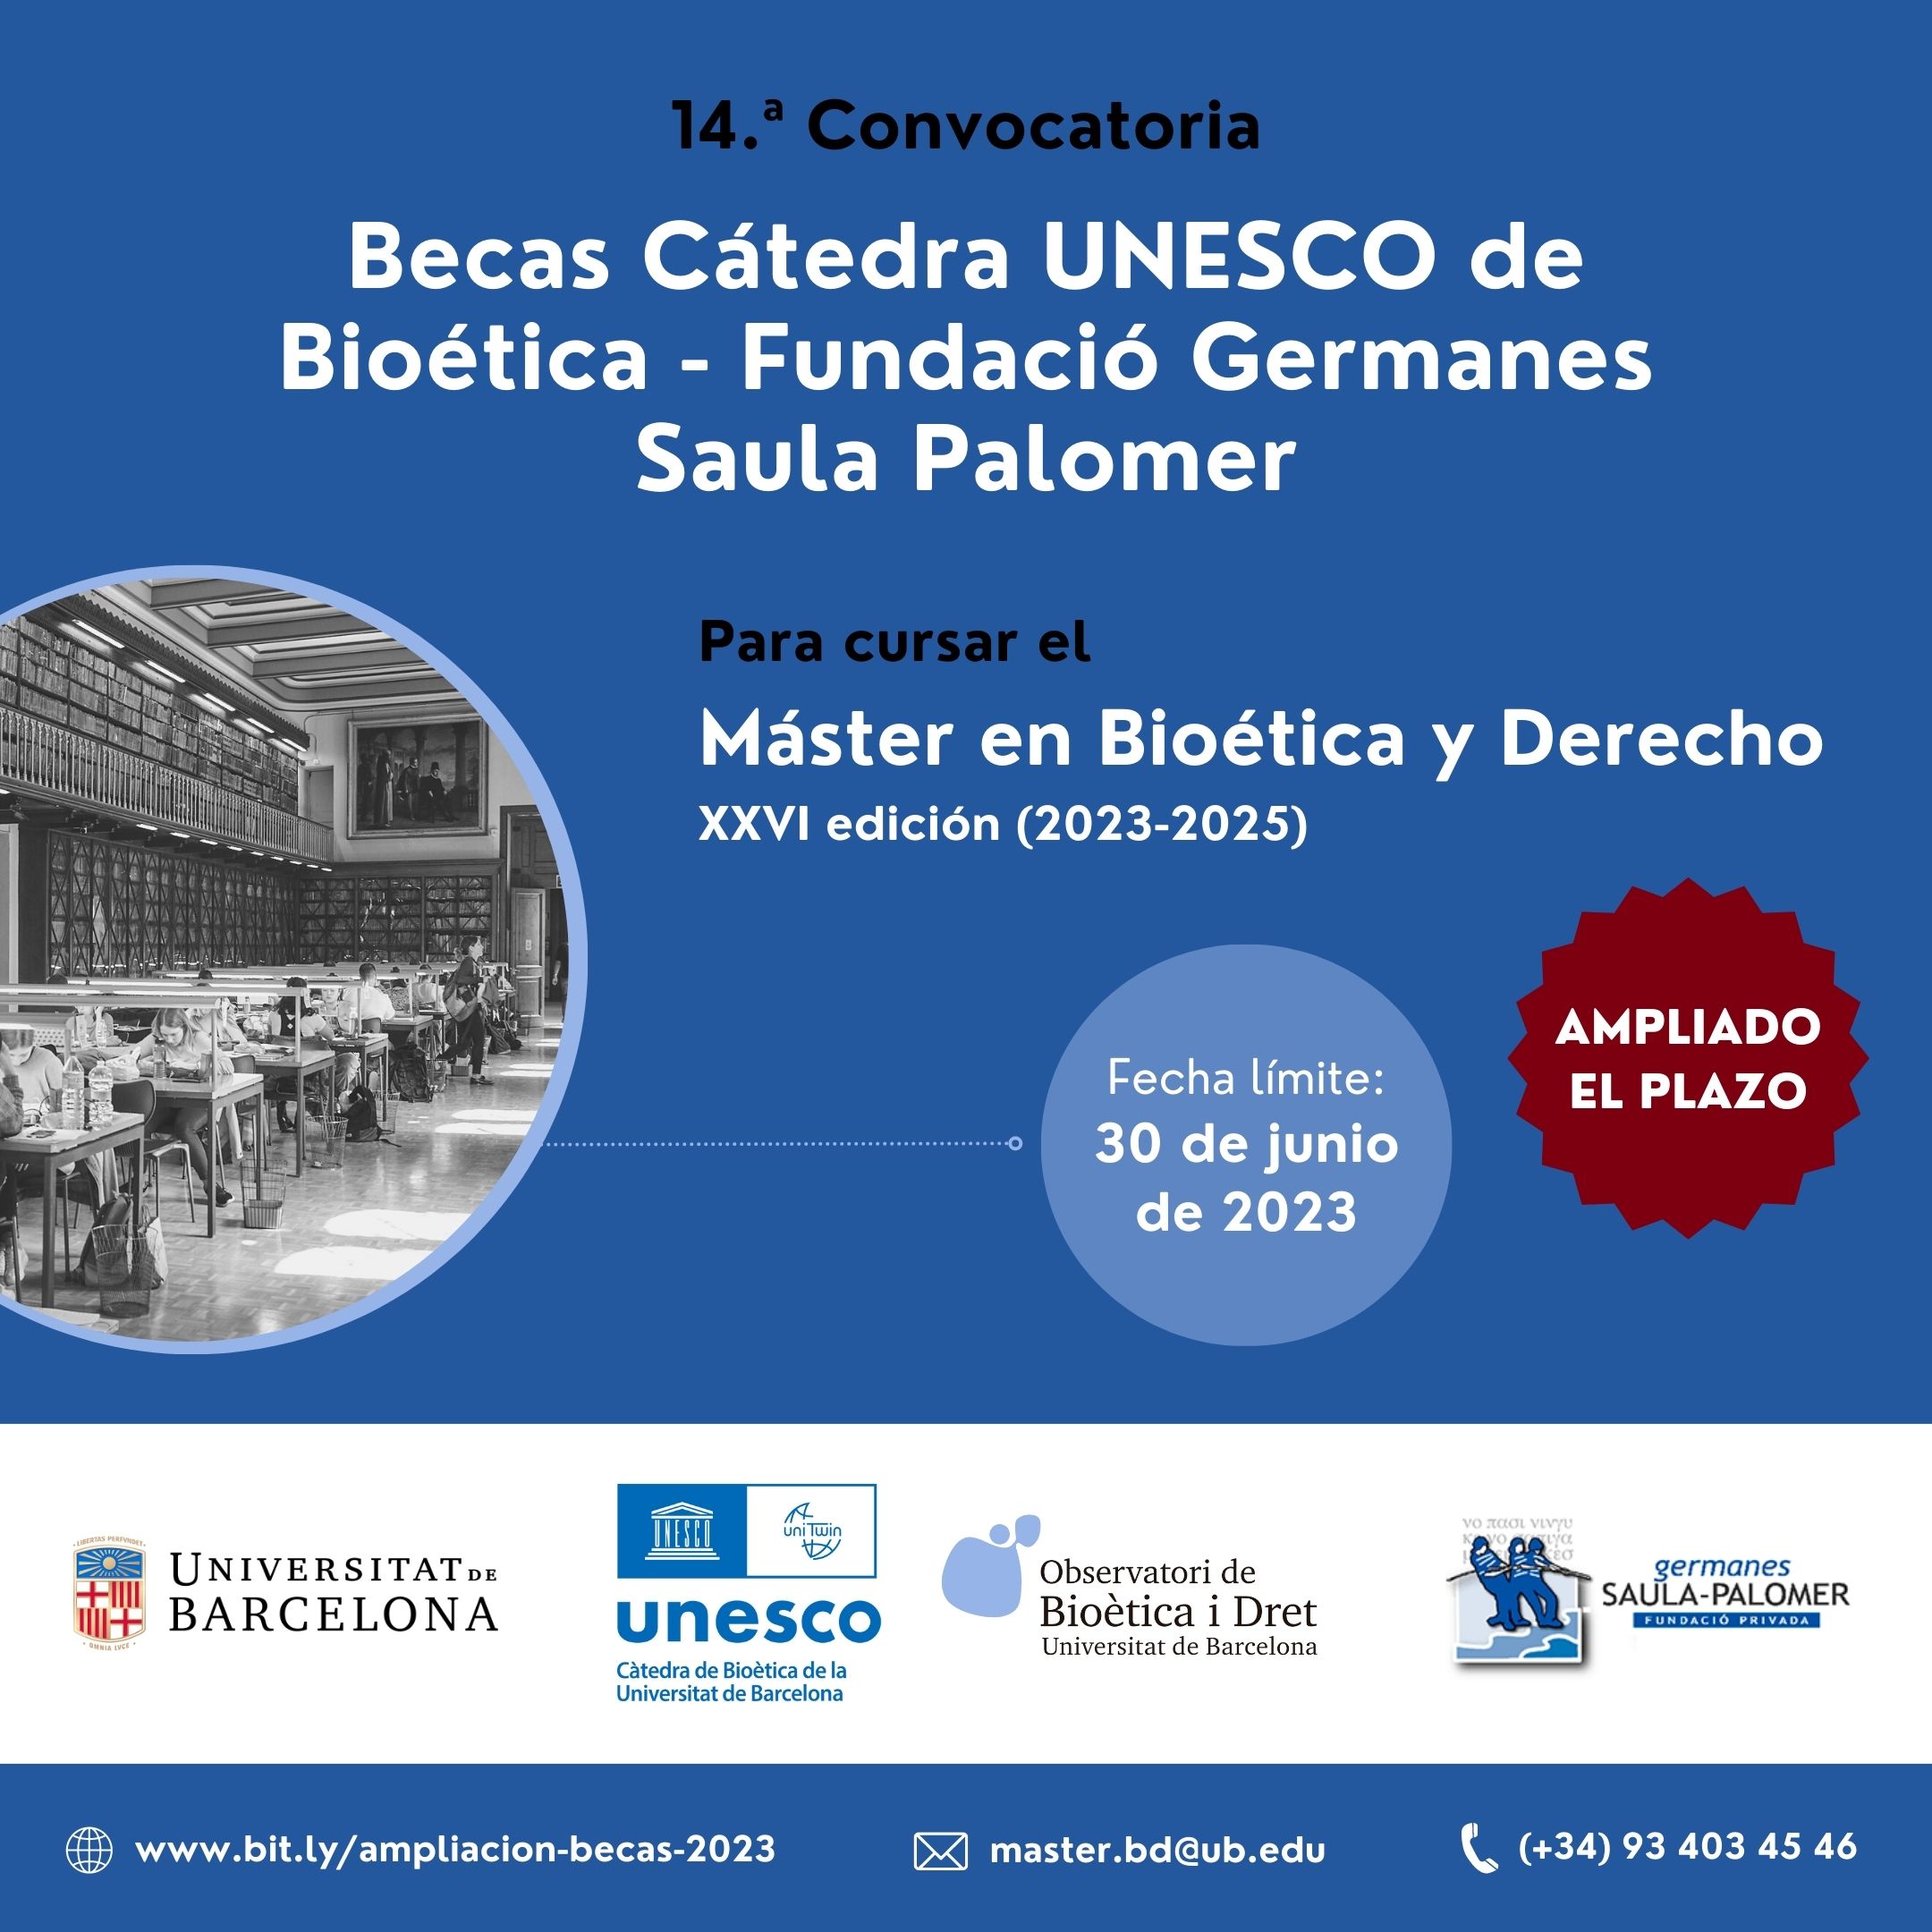 Ampliación becas UNESCO Bioética 2023